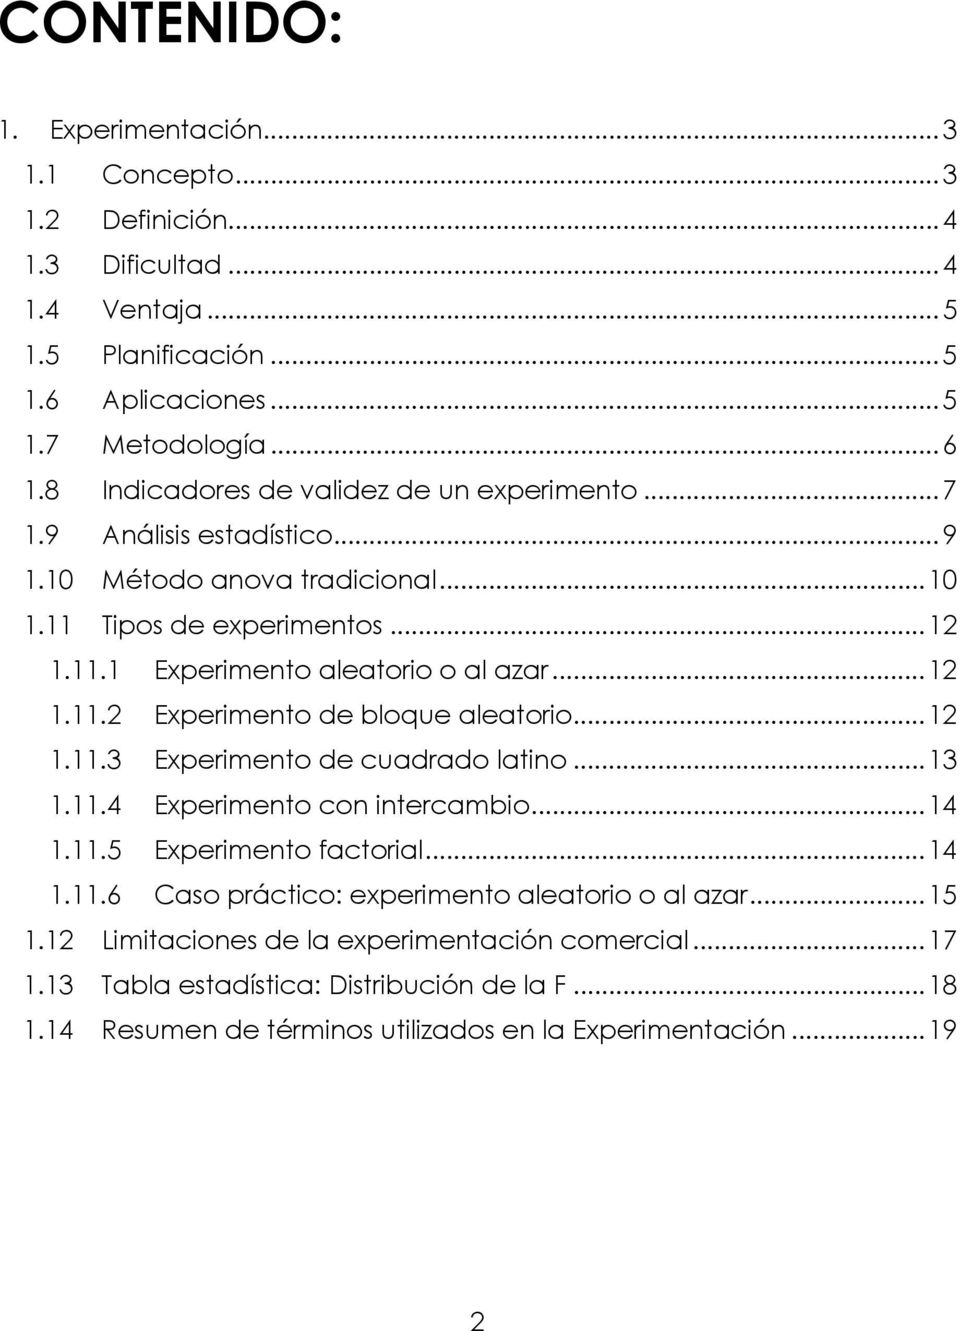 ..1 1.11.3 Experimento de cuadrado latino...13 1.11.4 Experimento con intercambio...14 1.11.5 Experimento factorial...14 1.11.6 Caso práctico: experimento aleatorio o al azar...15 1.